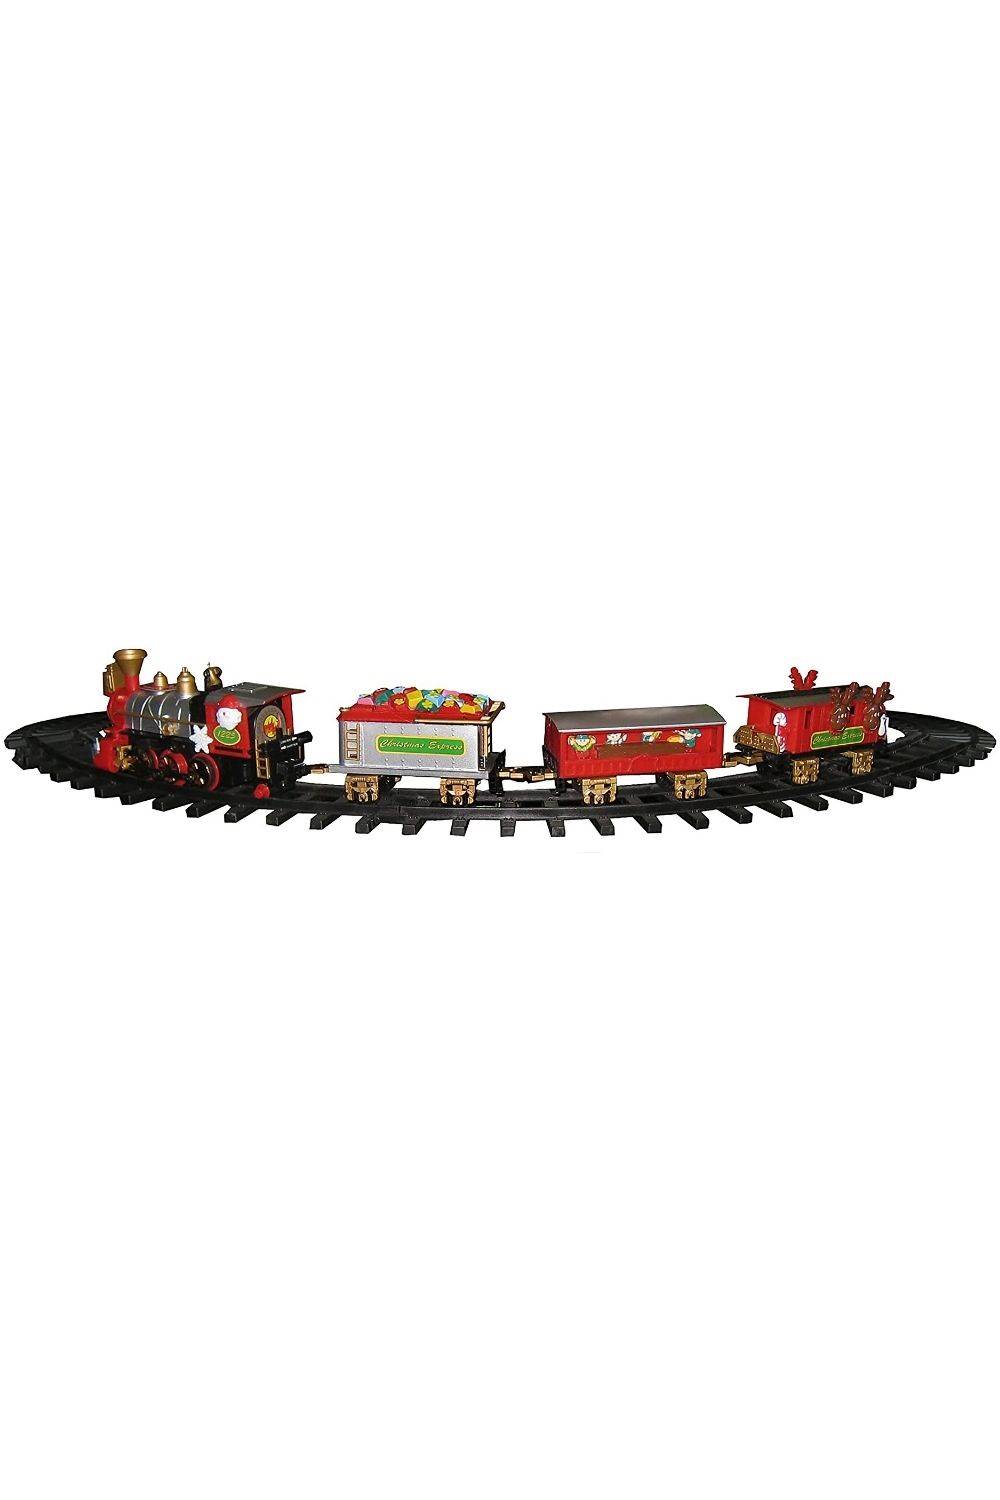 REILA Tren para Árbol con Soporte y Vagones, Rojo, 80 cm